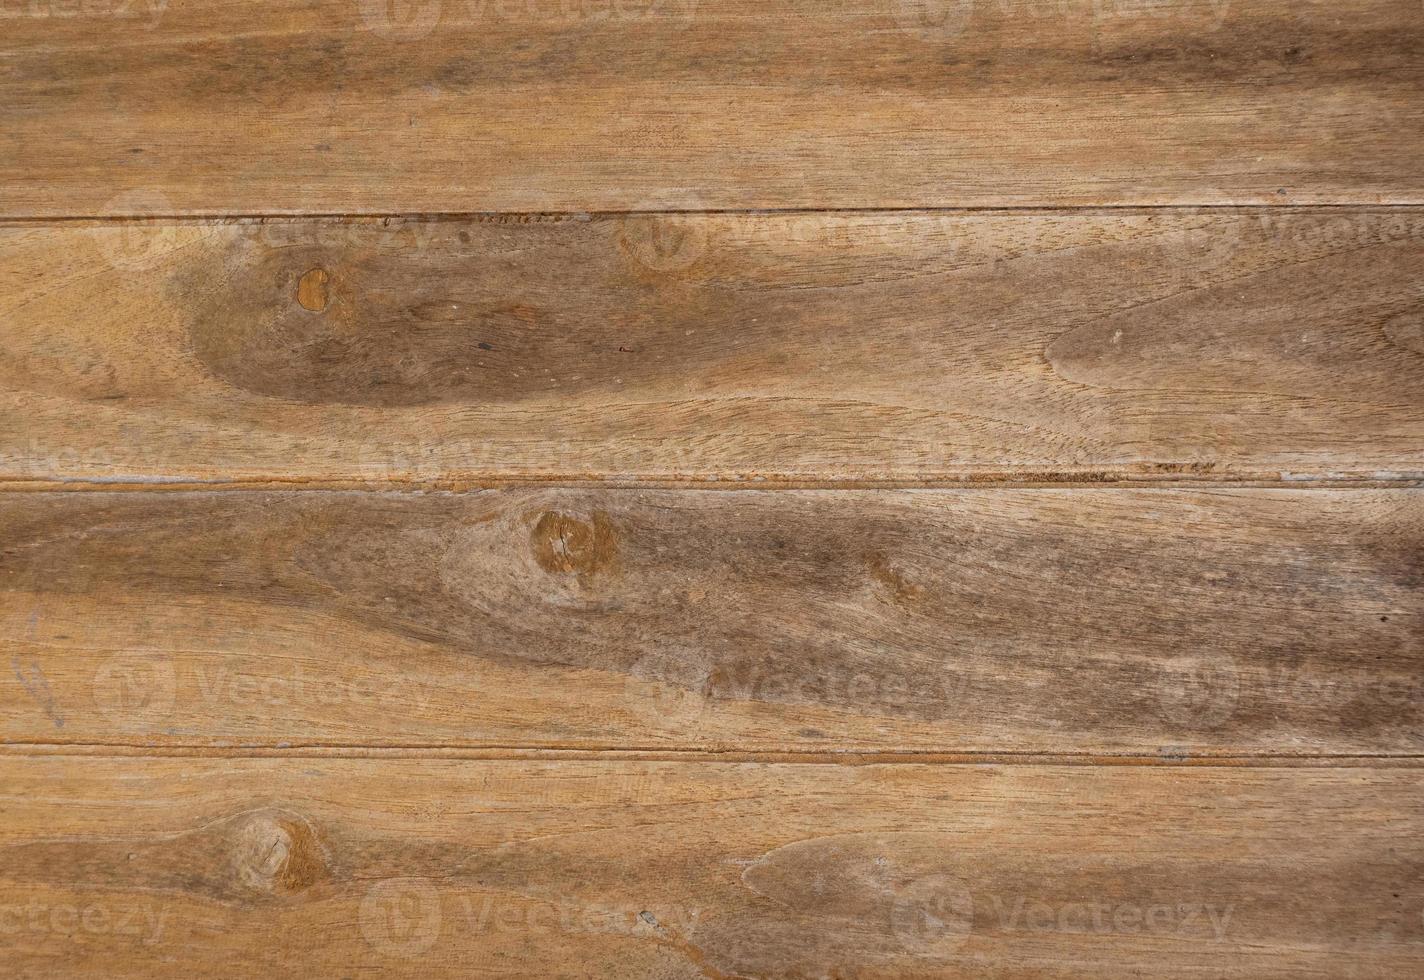 textura de madeira antiga, pode ser usada para exibir ou montar seus produtos. foto